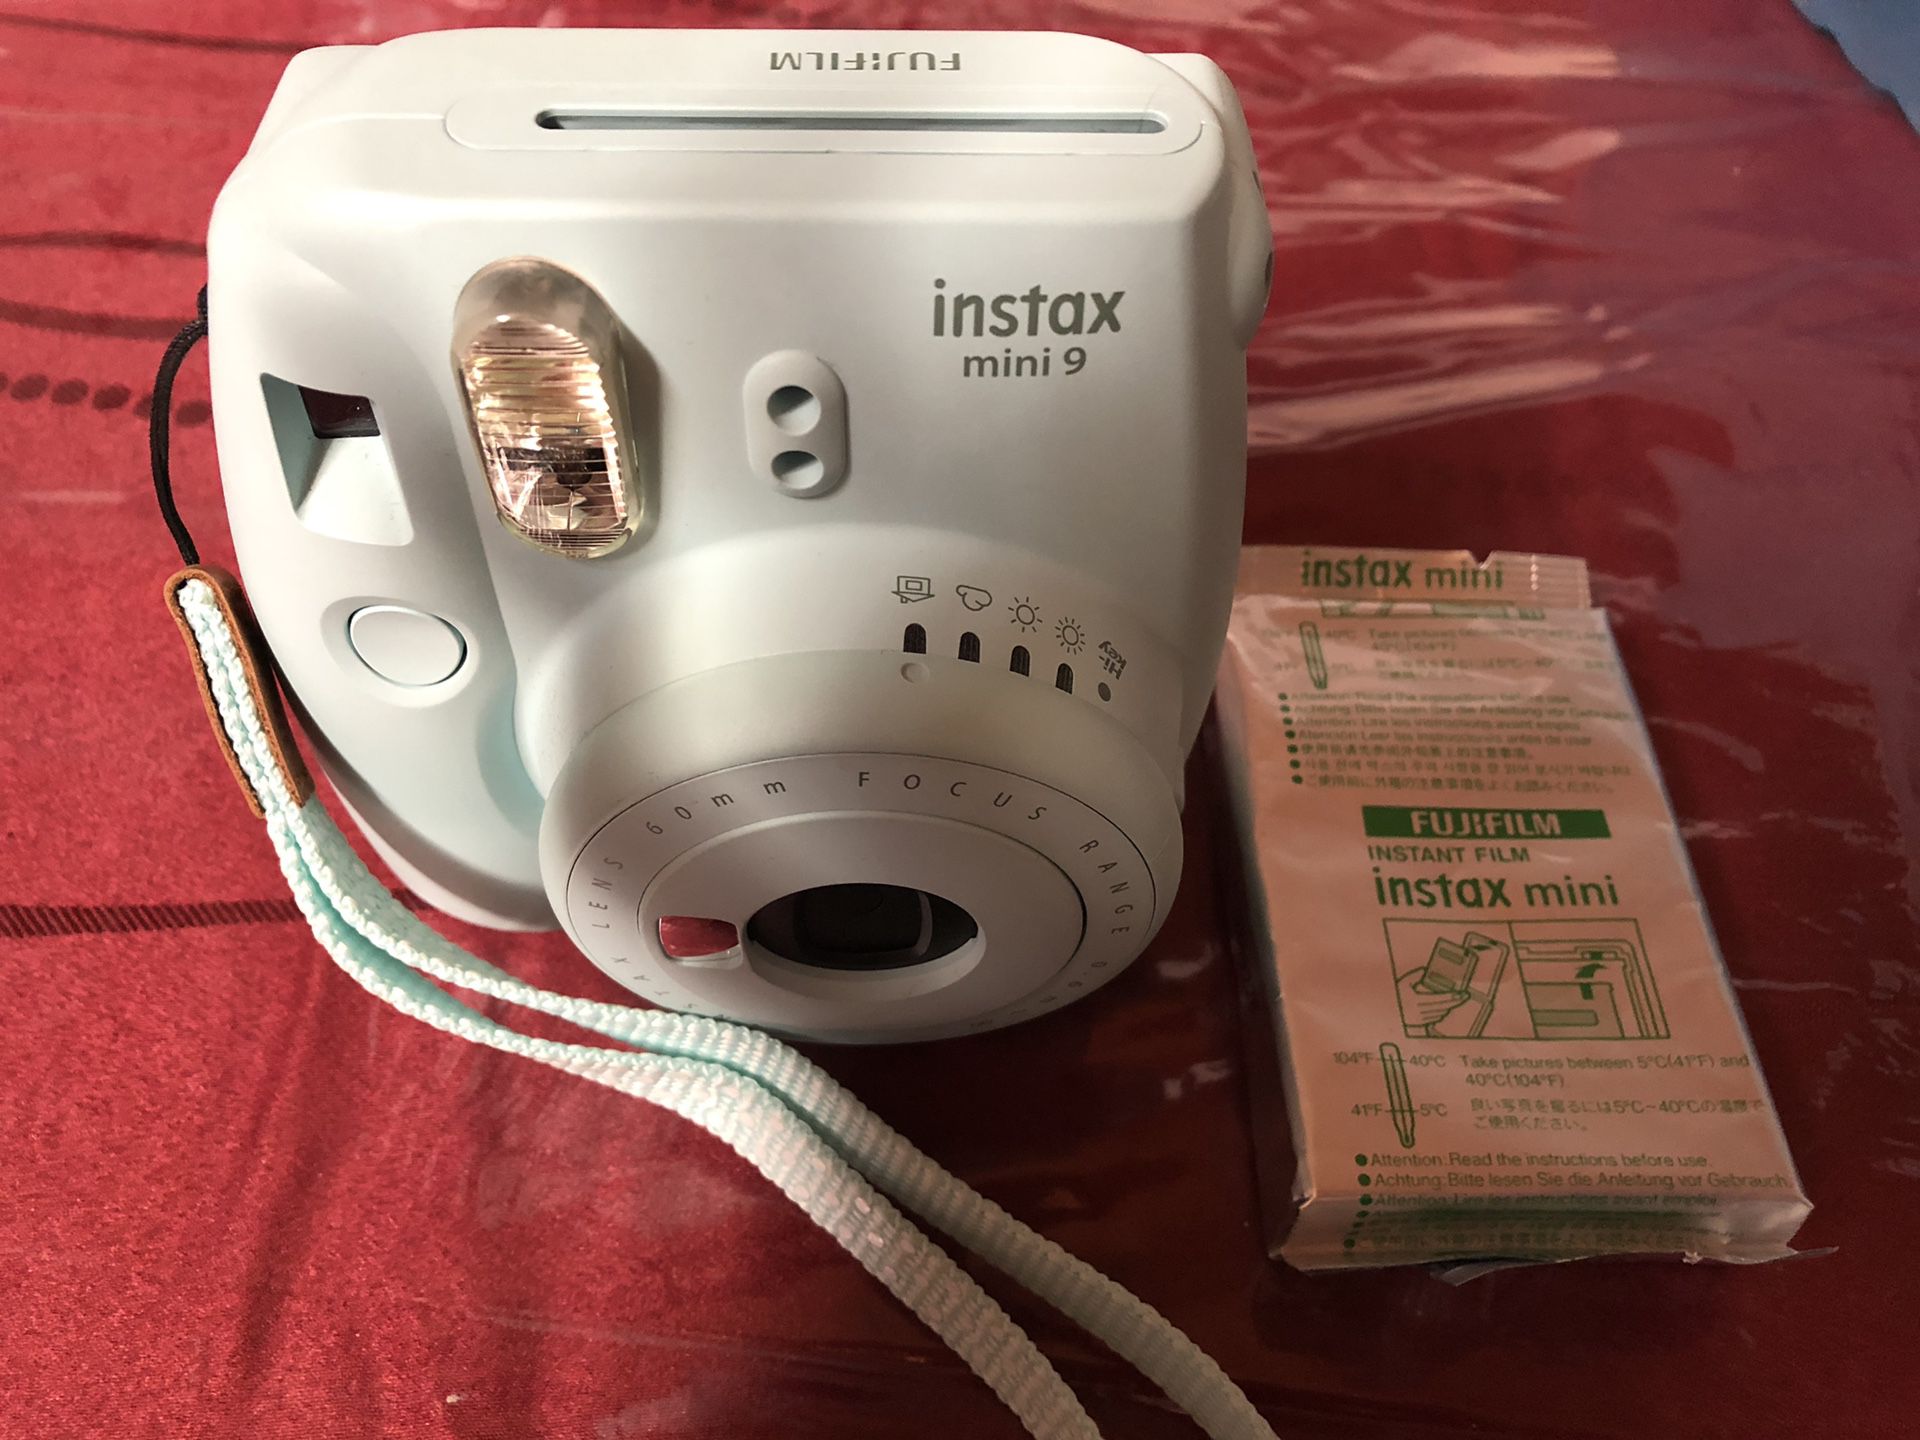 Instax mini 9 camera